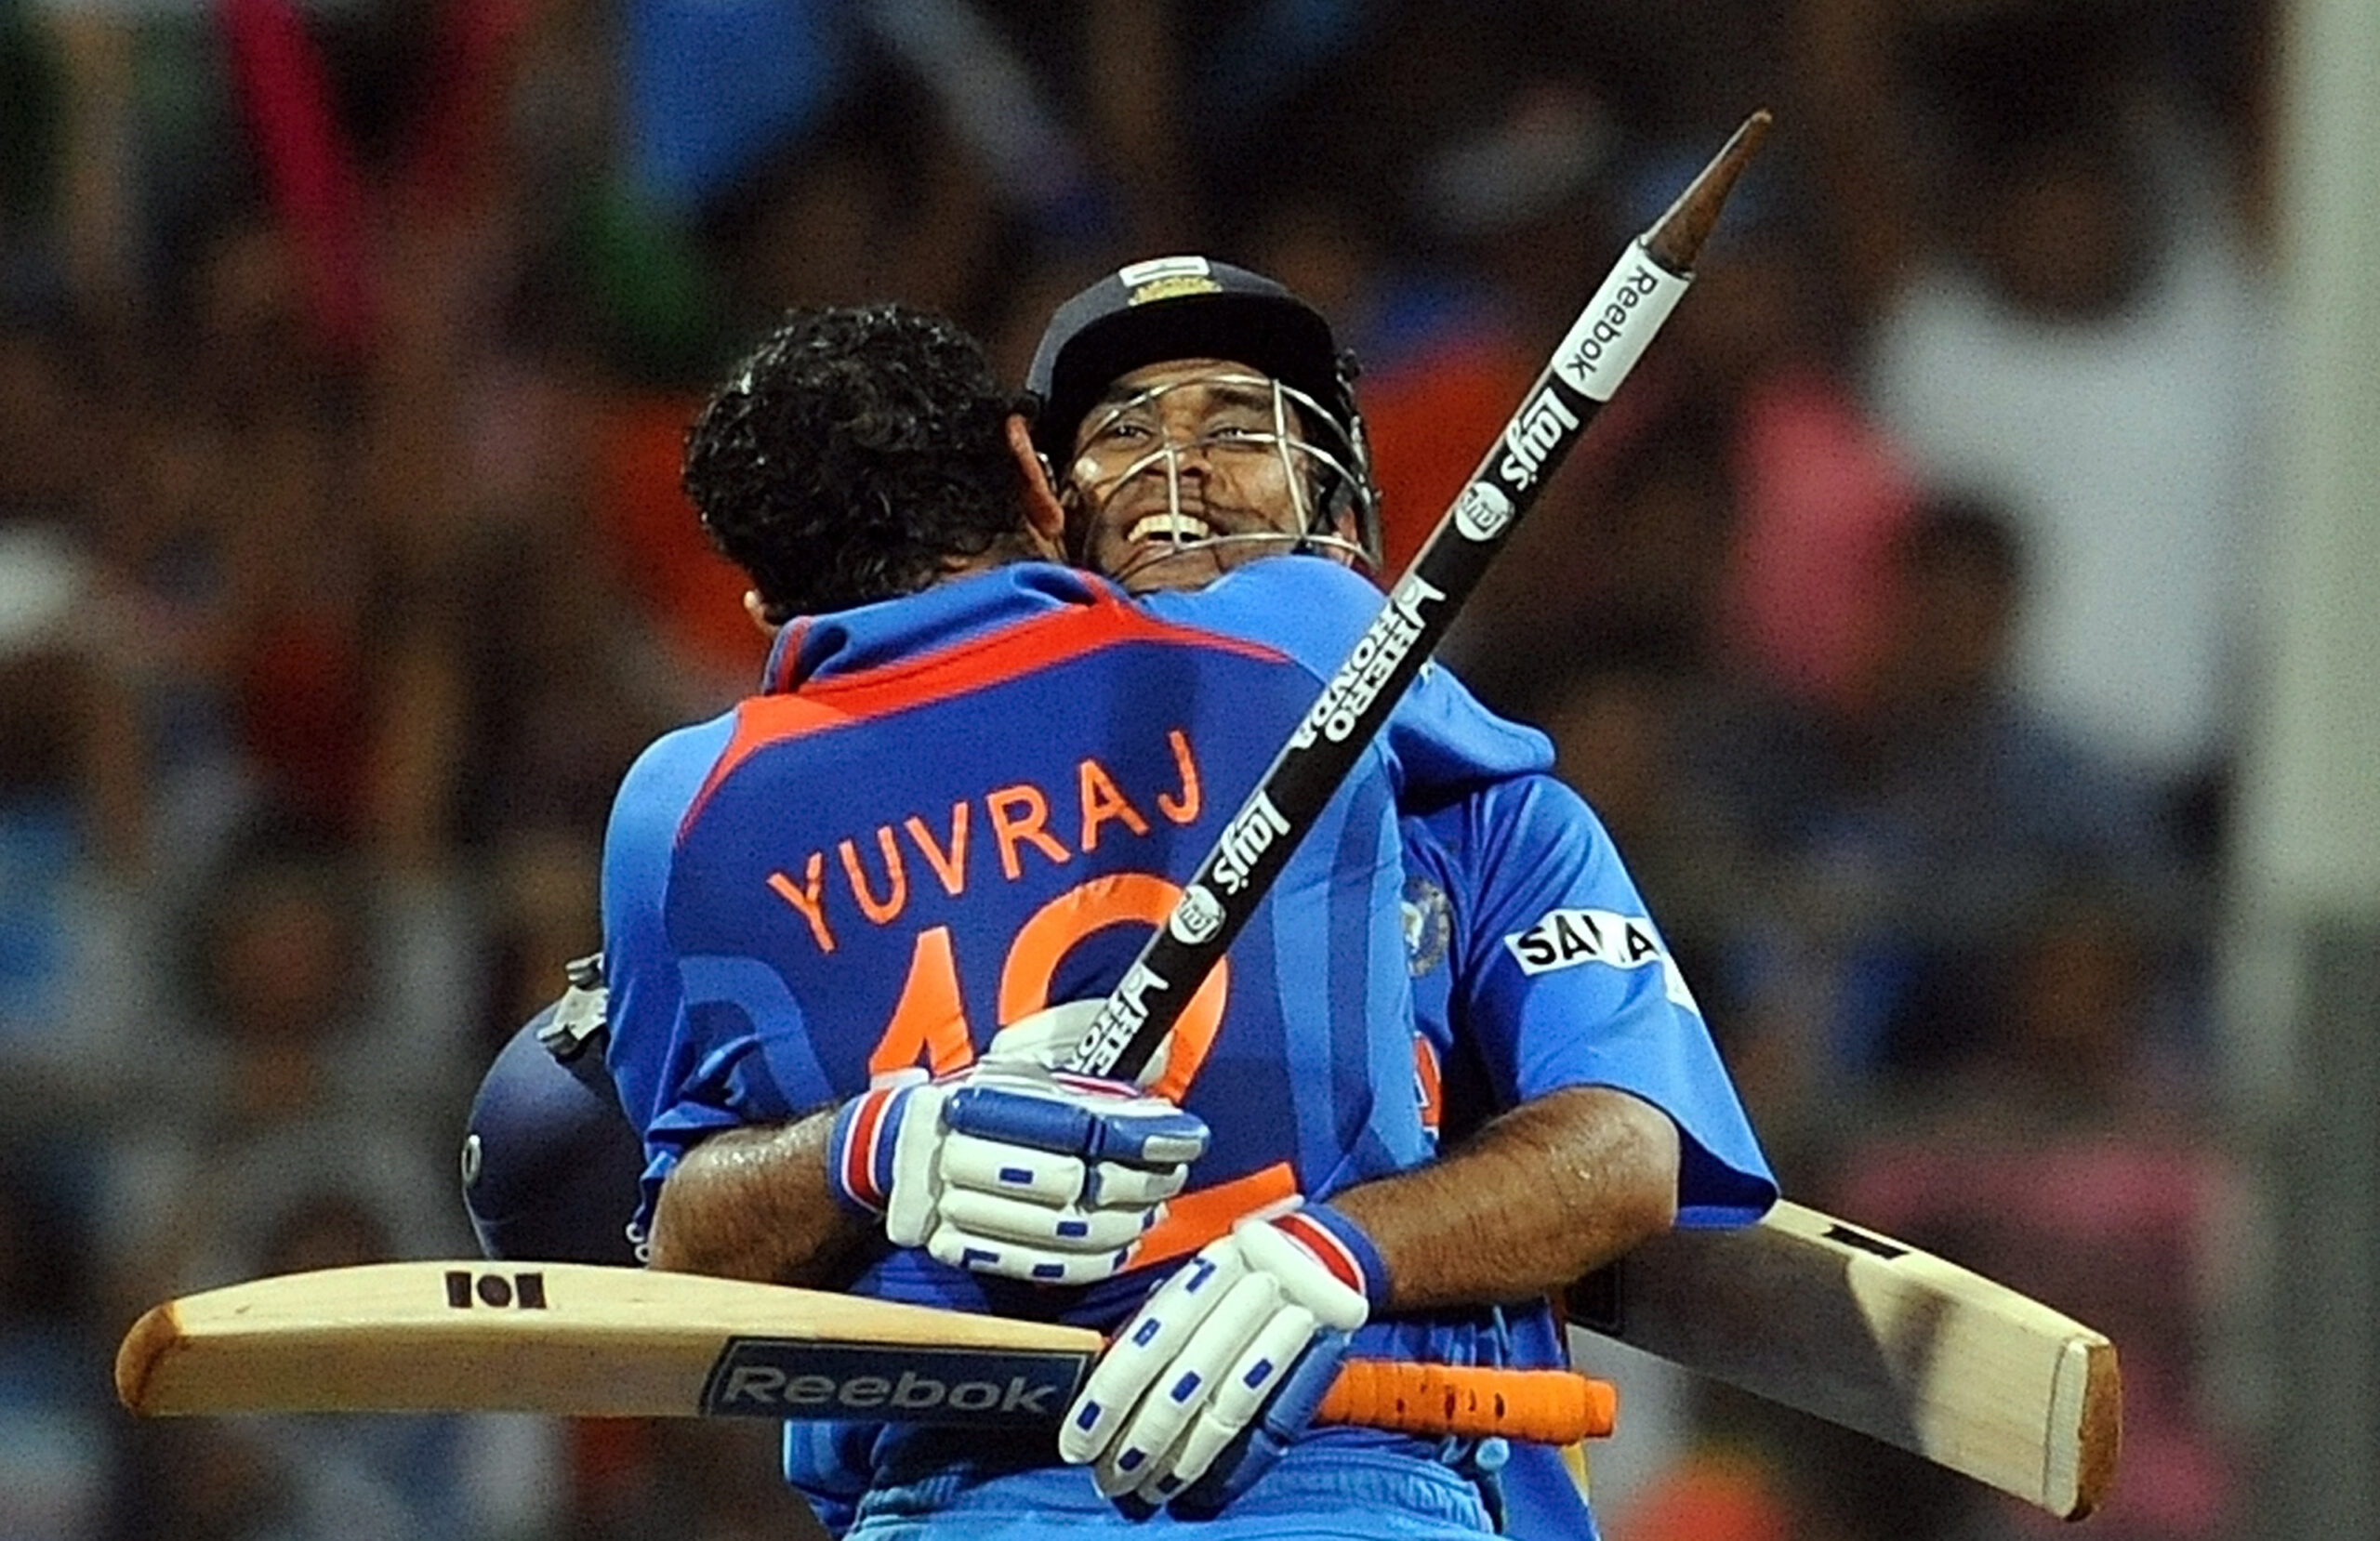 टीम इंडिया को नंबर 4 पर बल्लेबाजी करने के लिए मिला युवराज सिंह जैसा खिलाड़ी, टी20 वर्ल्ड कप 2022 में साबित होगा ट्रम्प कार्ड